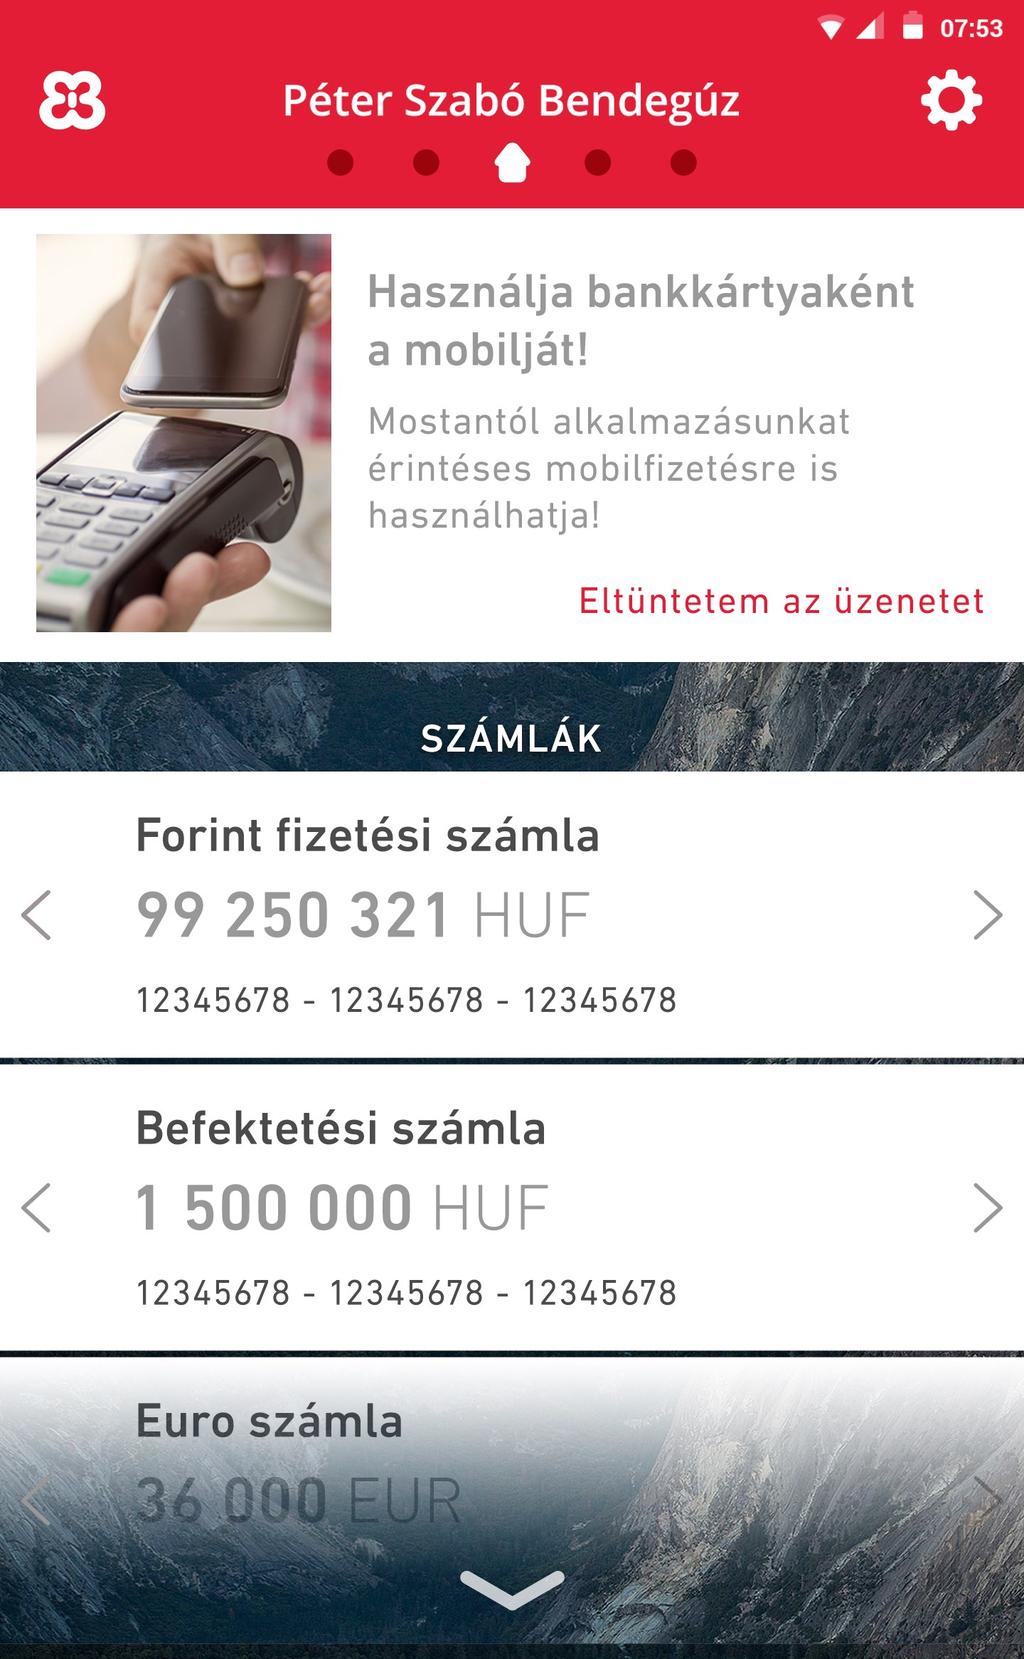 Budapest Bank Mobilfizetés Az alkalmazásban lehetősége van bankkártyáját díjmentesen digitalizálni, azt követően pedig érintéses mobilfizetésre használni.